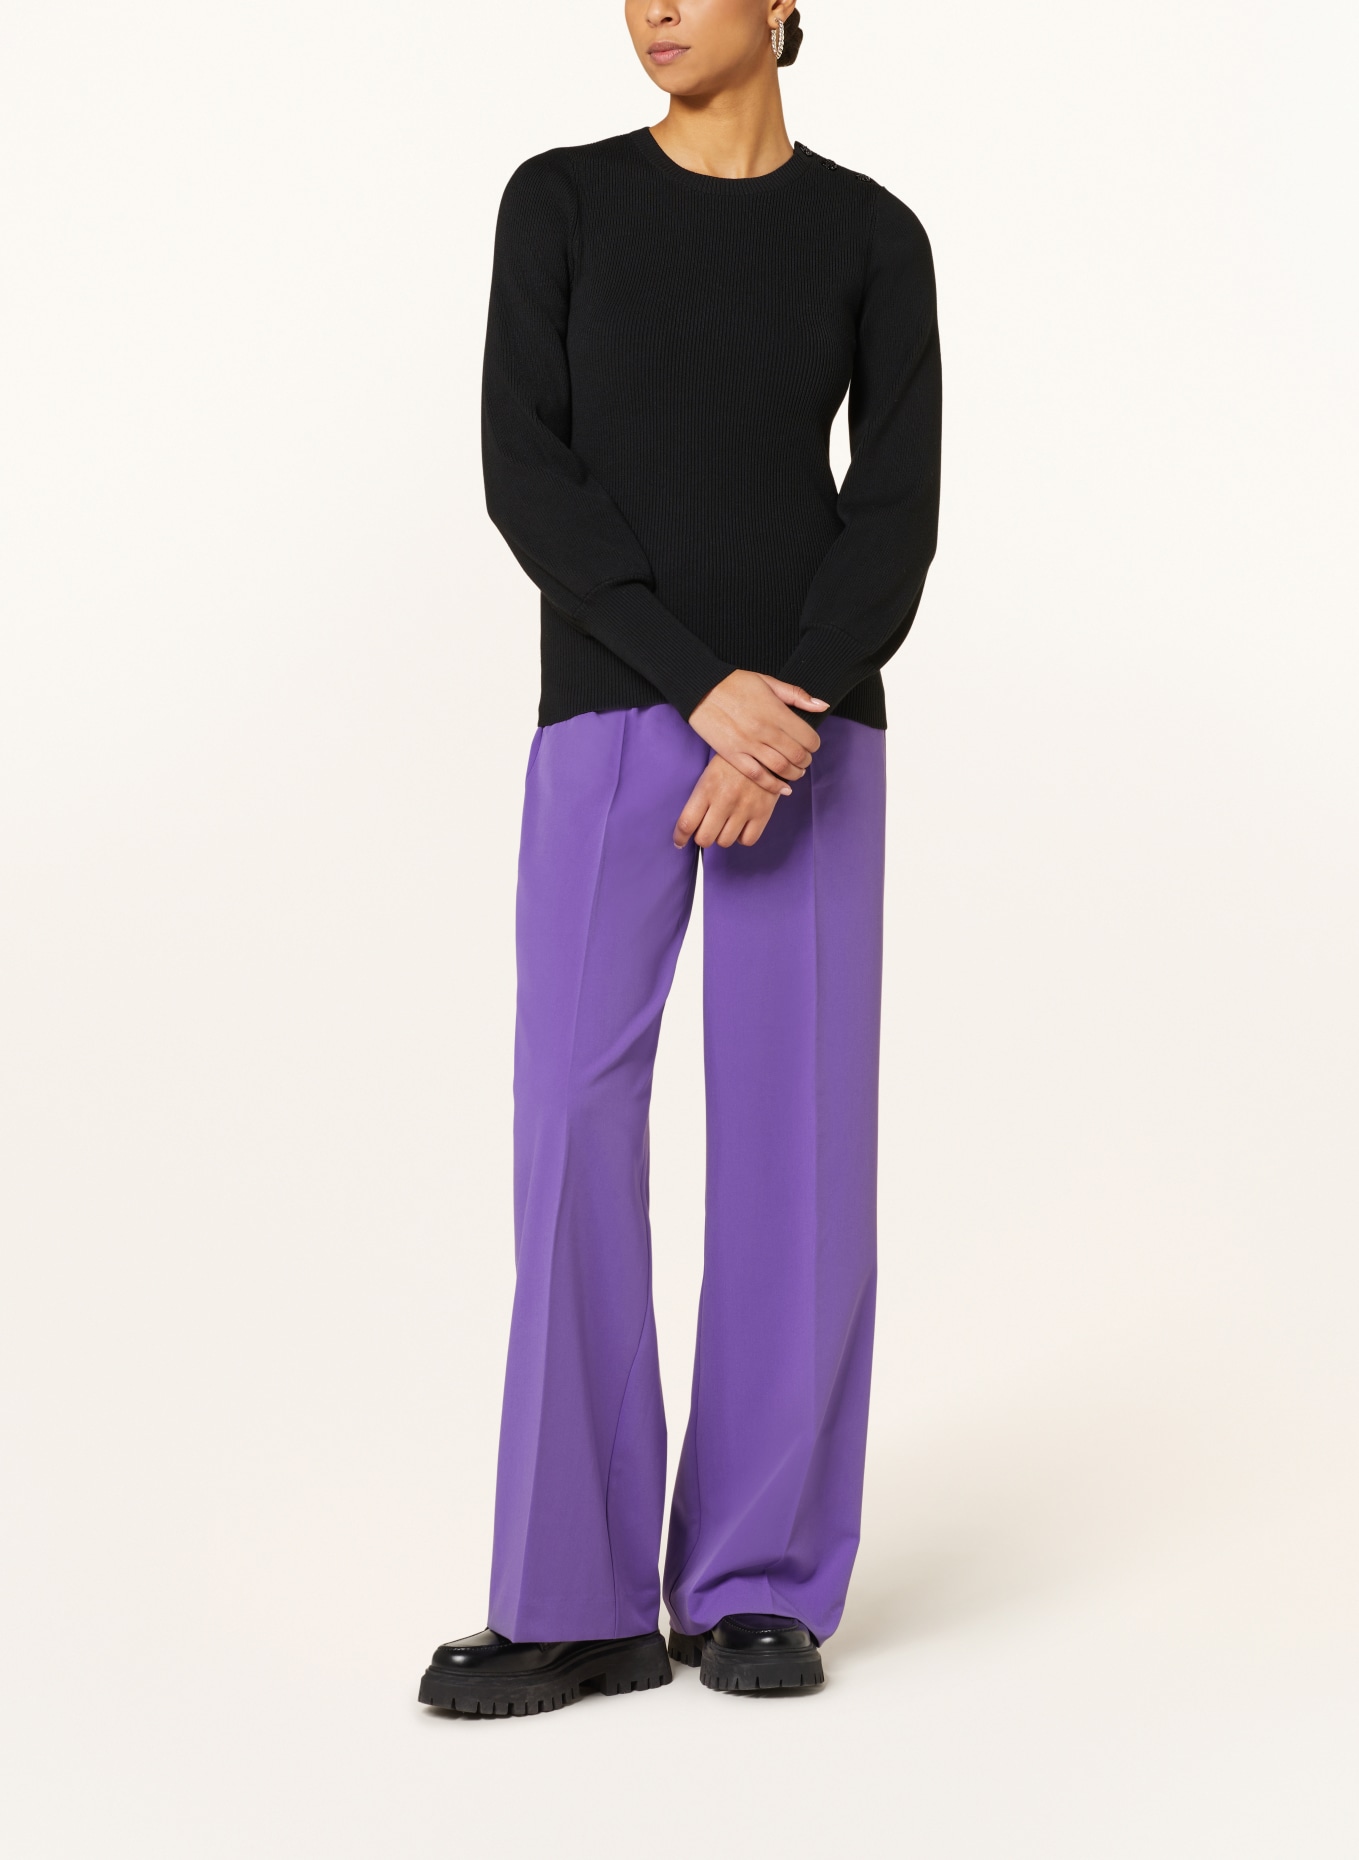 FABIENNE CHAPOT Sweater LILLIAN, Color: BLACK (Image 2)